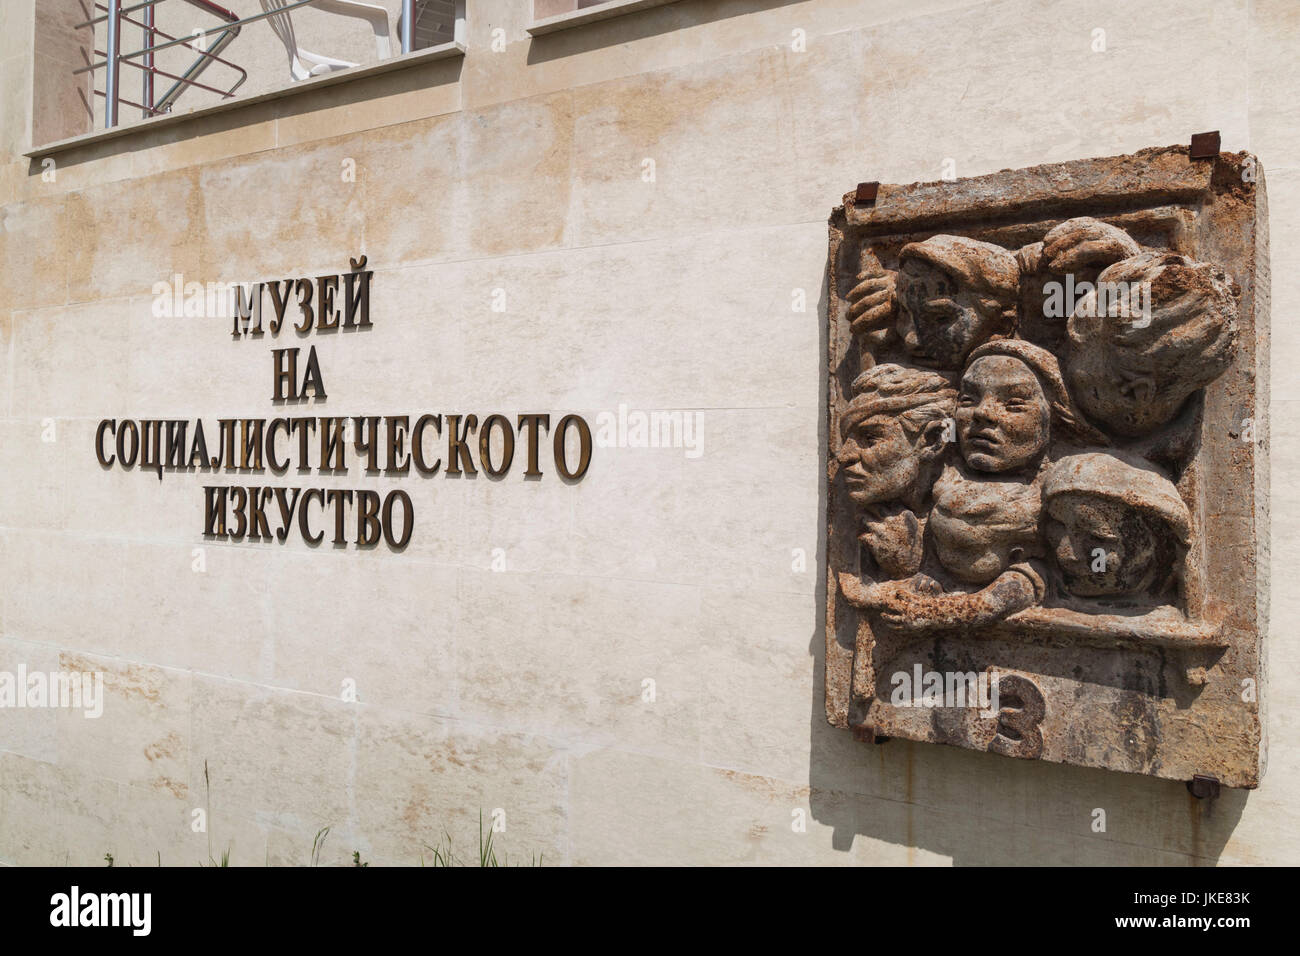 La Bulgaria, Sofia, parco delle sculture di arte socialista, esterno del Museo di Arte socialista, scultura "Terzo di classe' da Ivan Funev, 1935 Foto Stock